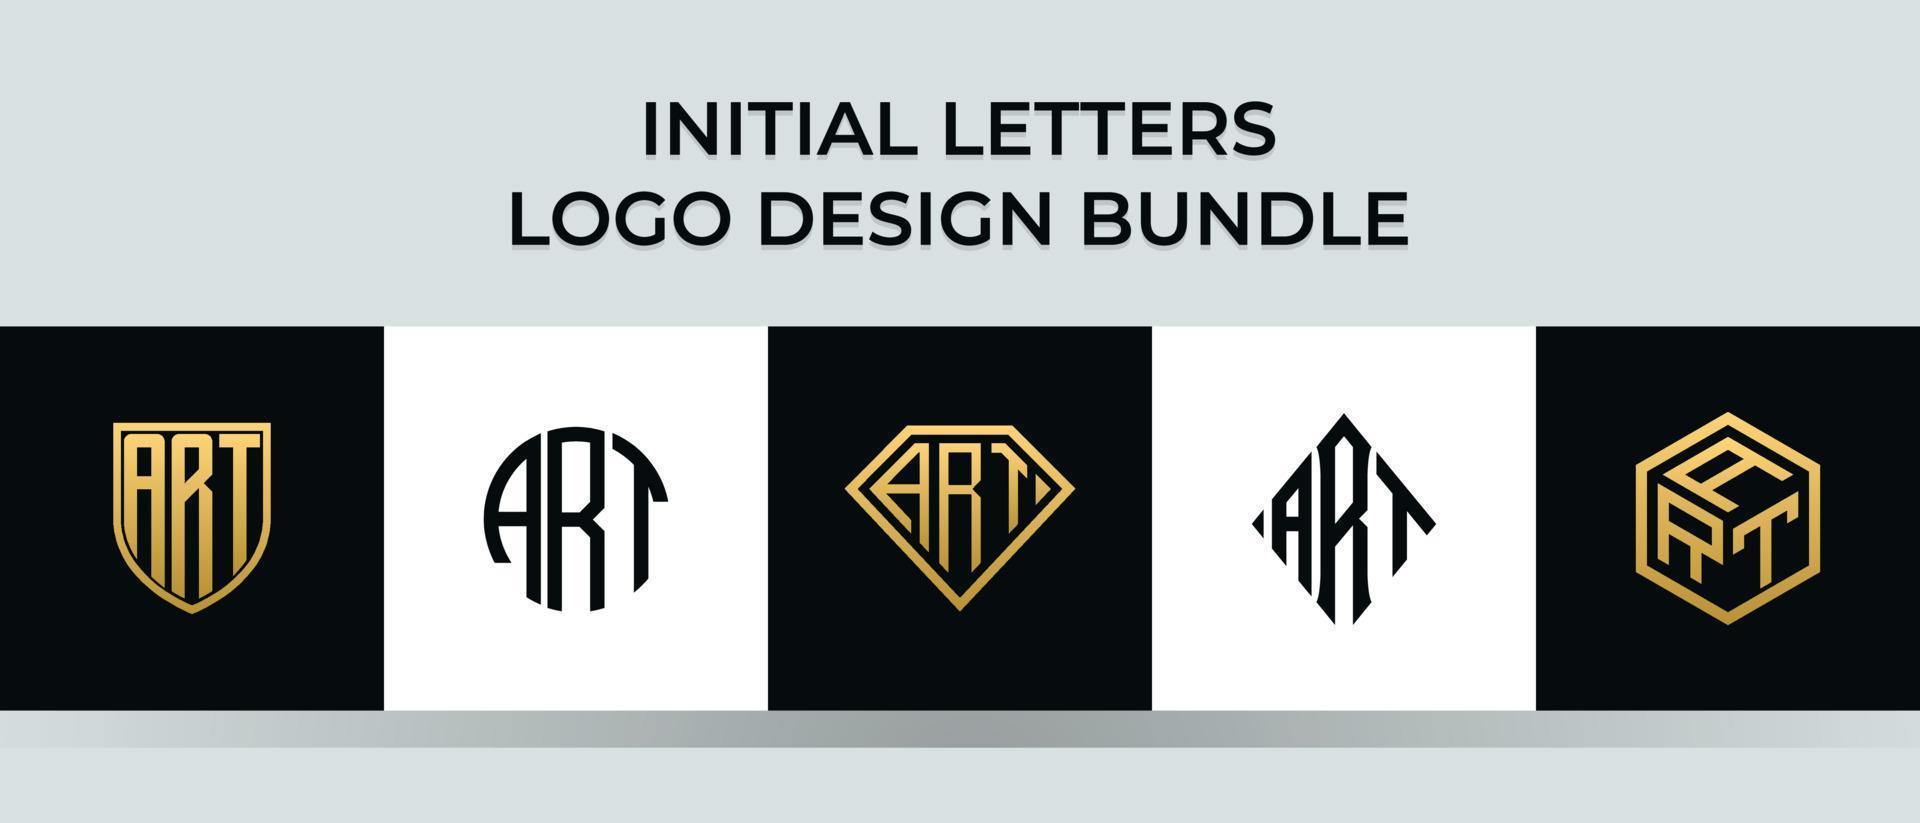 beginletters kunst logo ontwerpen bundel vector